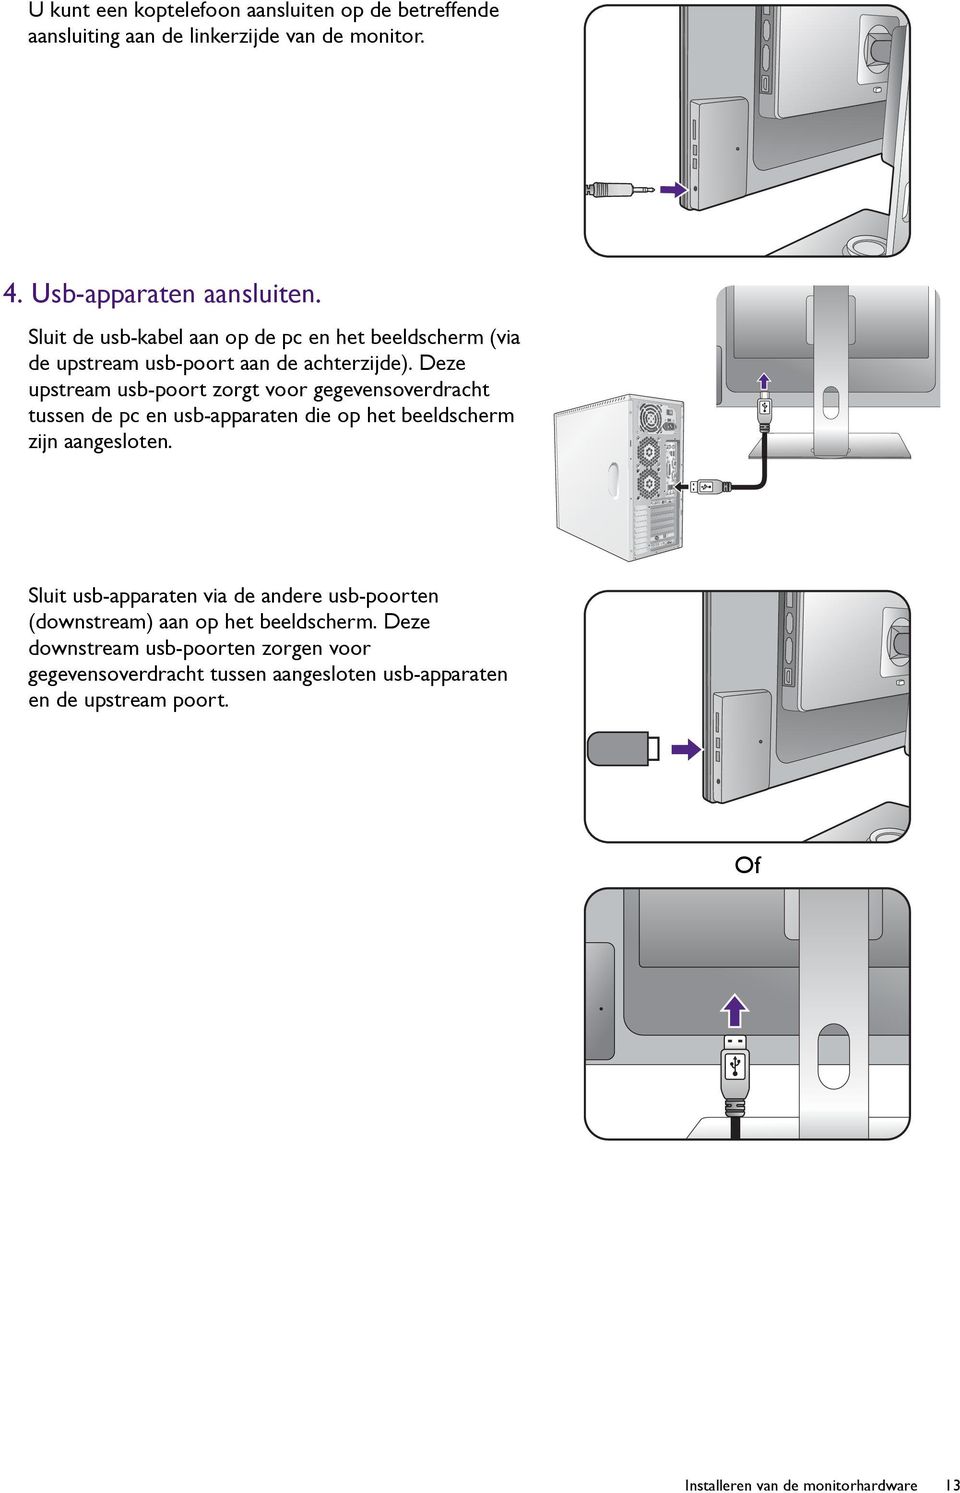 Deze upstream usb-poort zorgt voor gegevensoverdracht tussen de pc en usb-apparaten die op het beeldscherm zijn aangesloten.